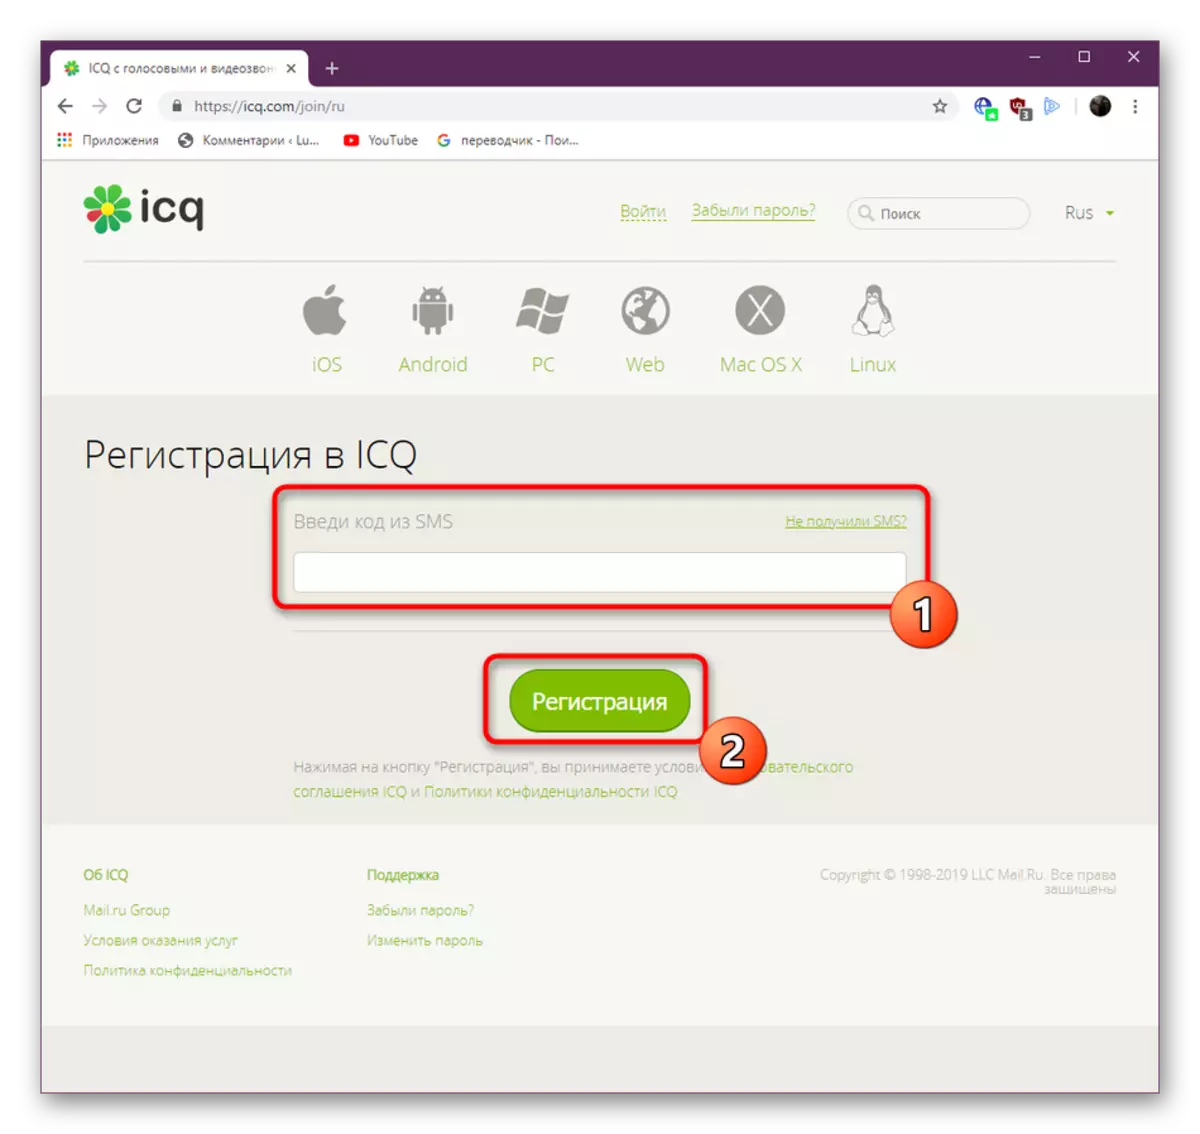 Rasmiy veb-saytda ICQni ro'yxatdan o'tkazish uchun kodni qabul qilish